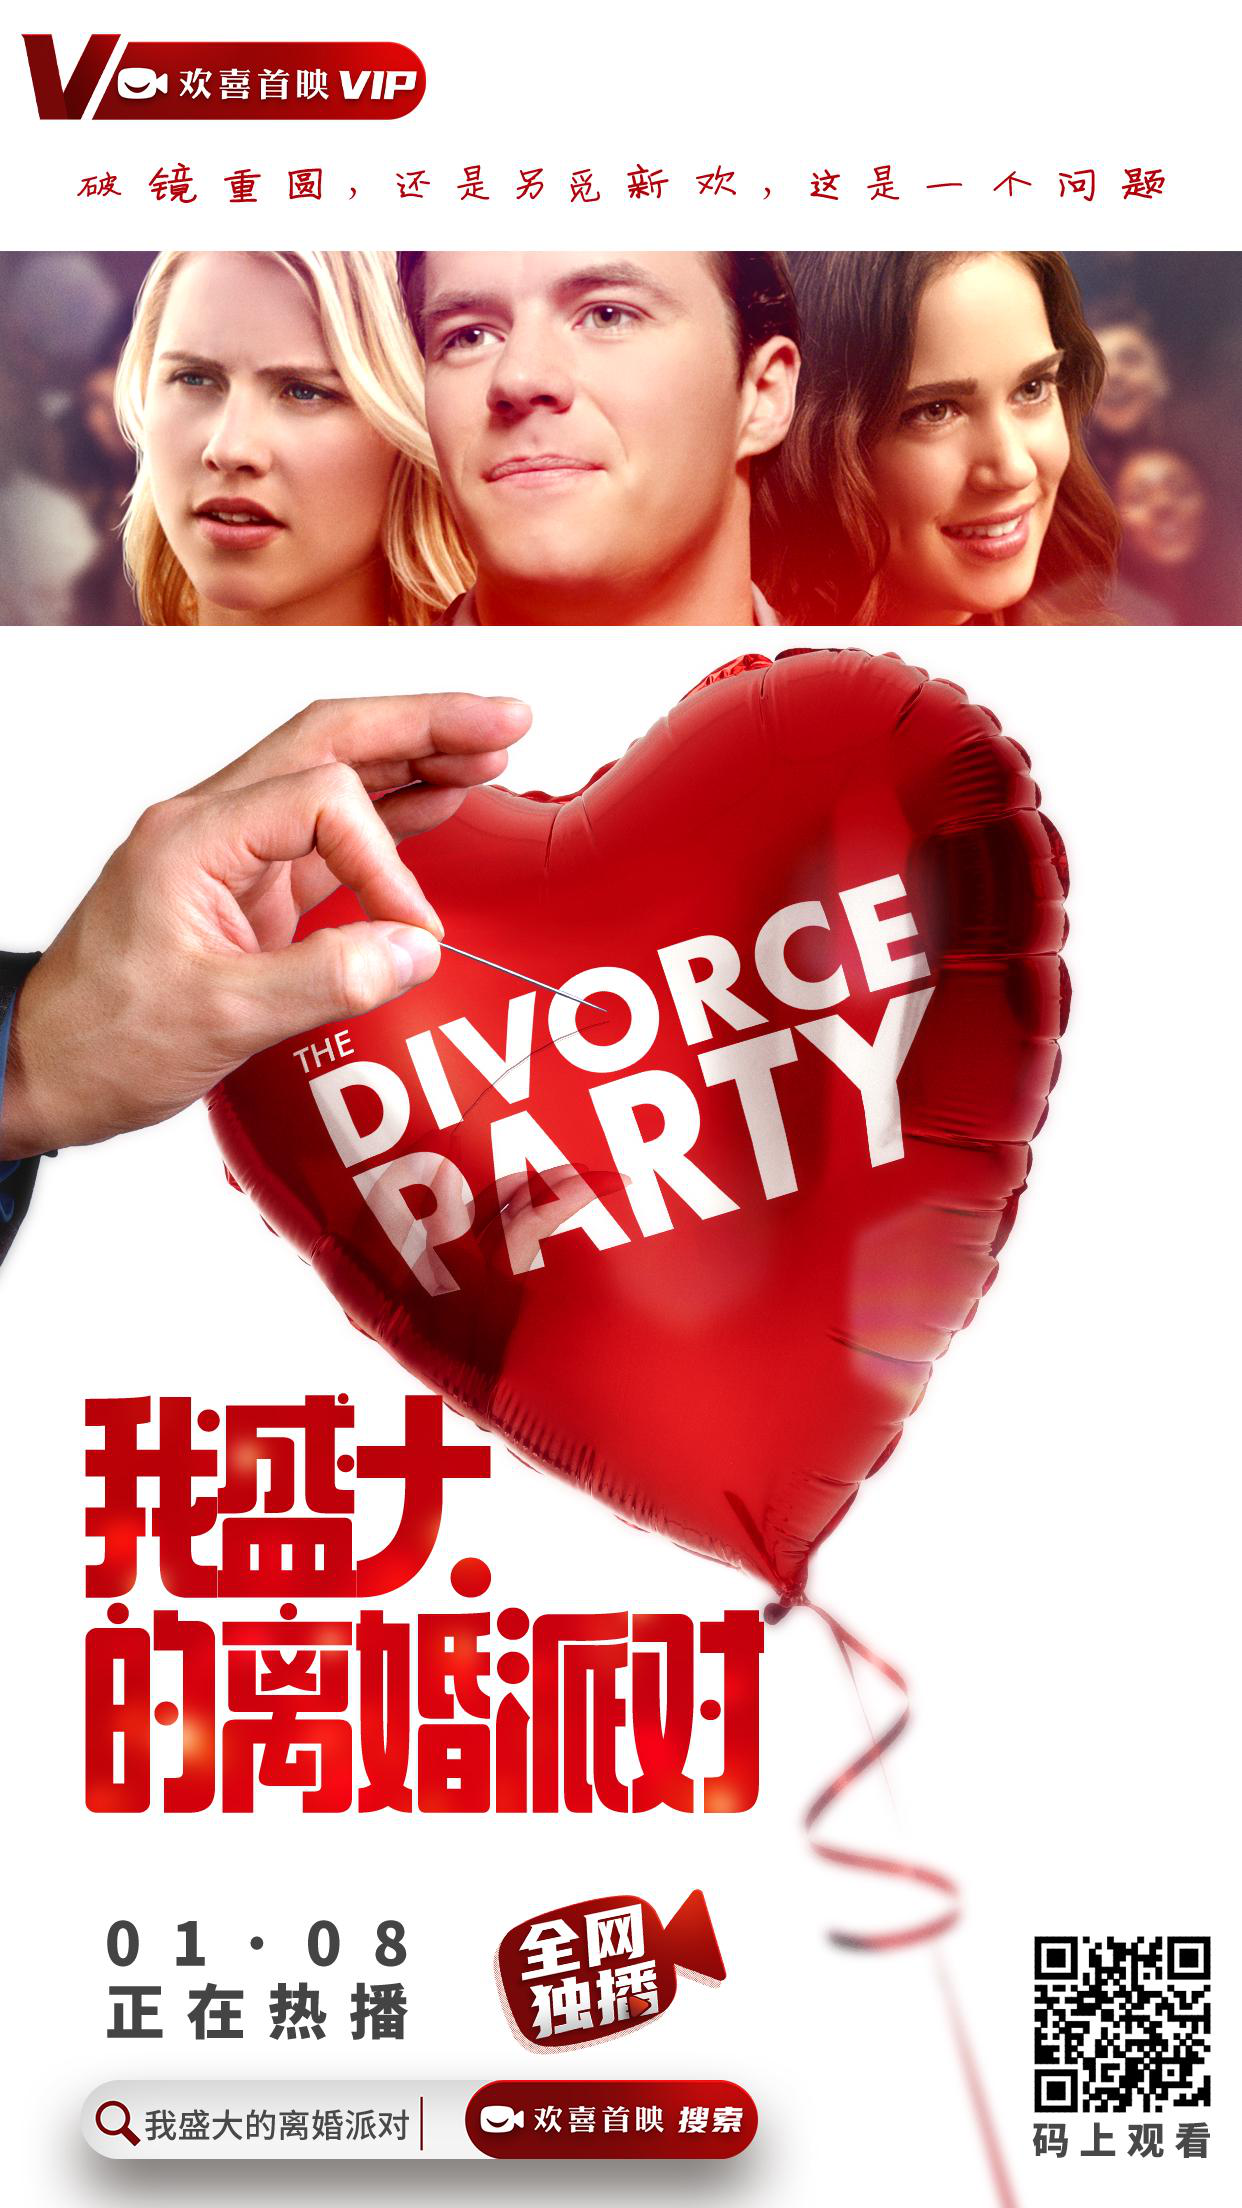 《我盛大的离婚派对》登陆欢喜首映APP全网独播 爱情喜剧解构婚姻难题